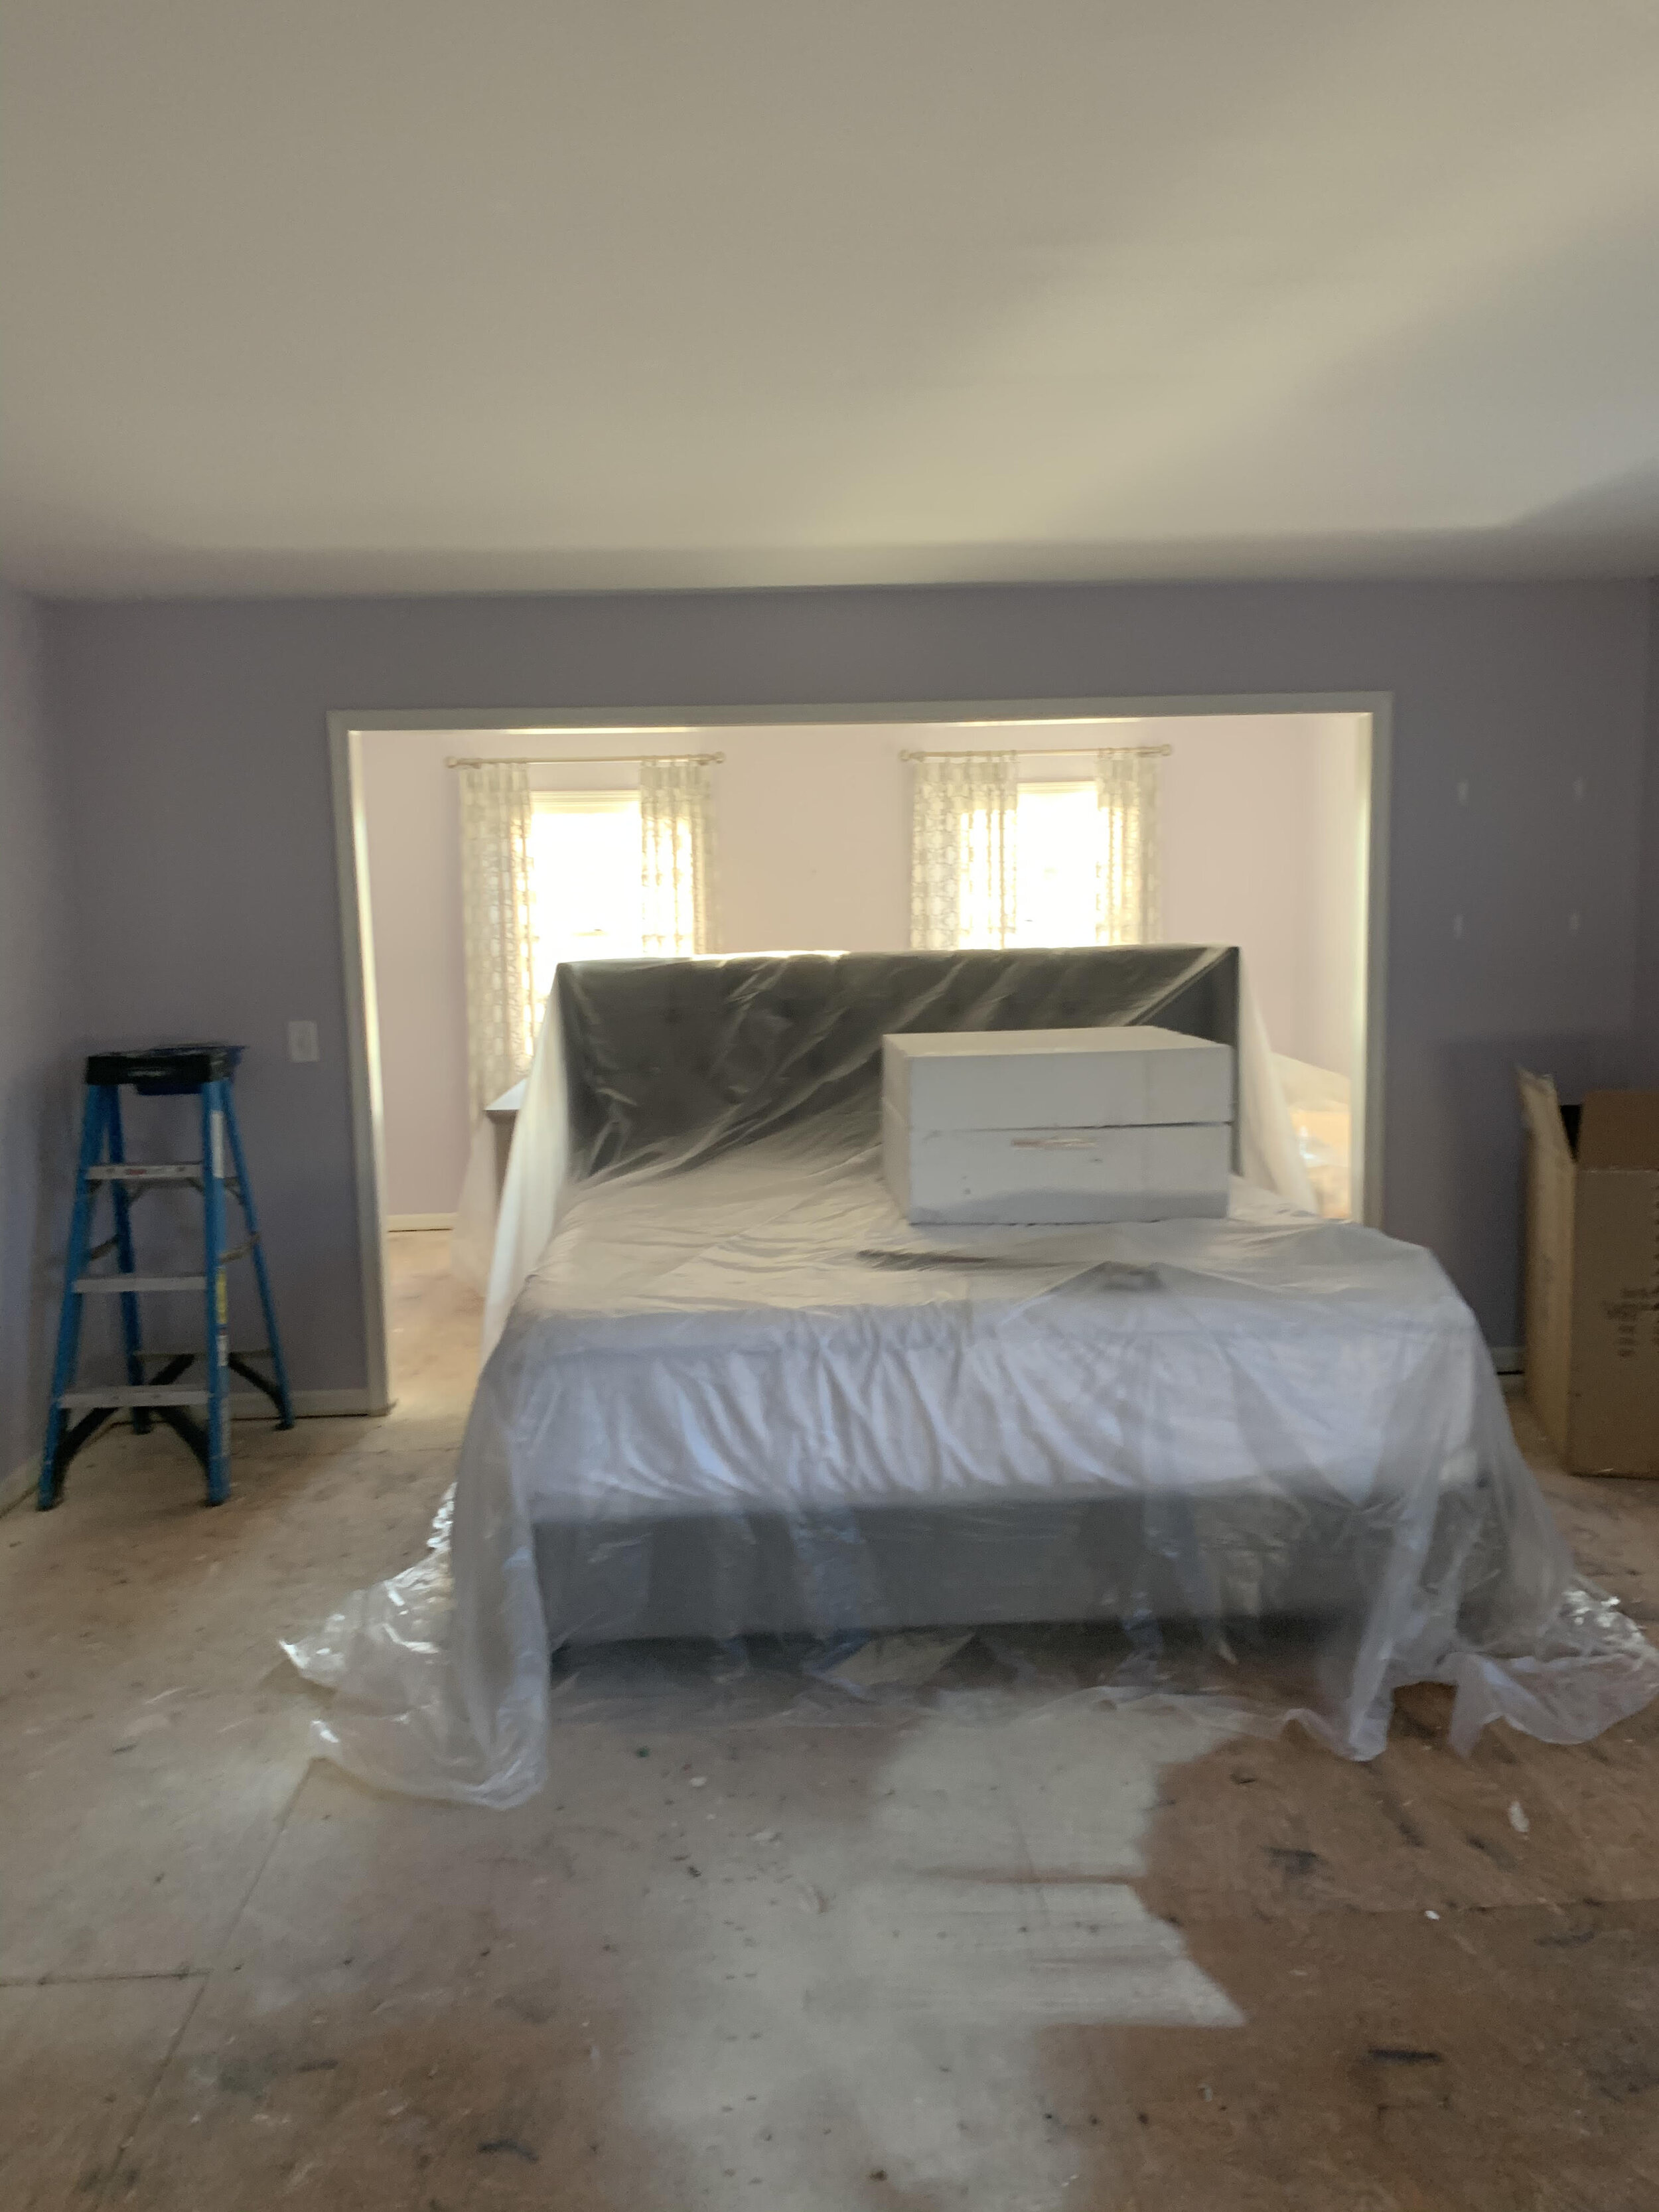 Our Master Bedroom Remodel: Part I &lt;The Bathroom&gt; 